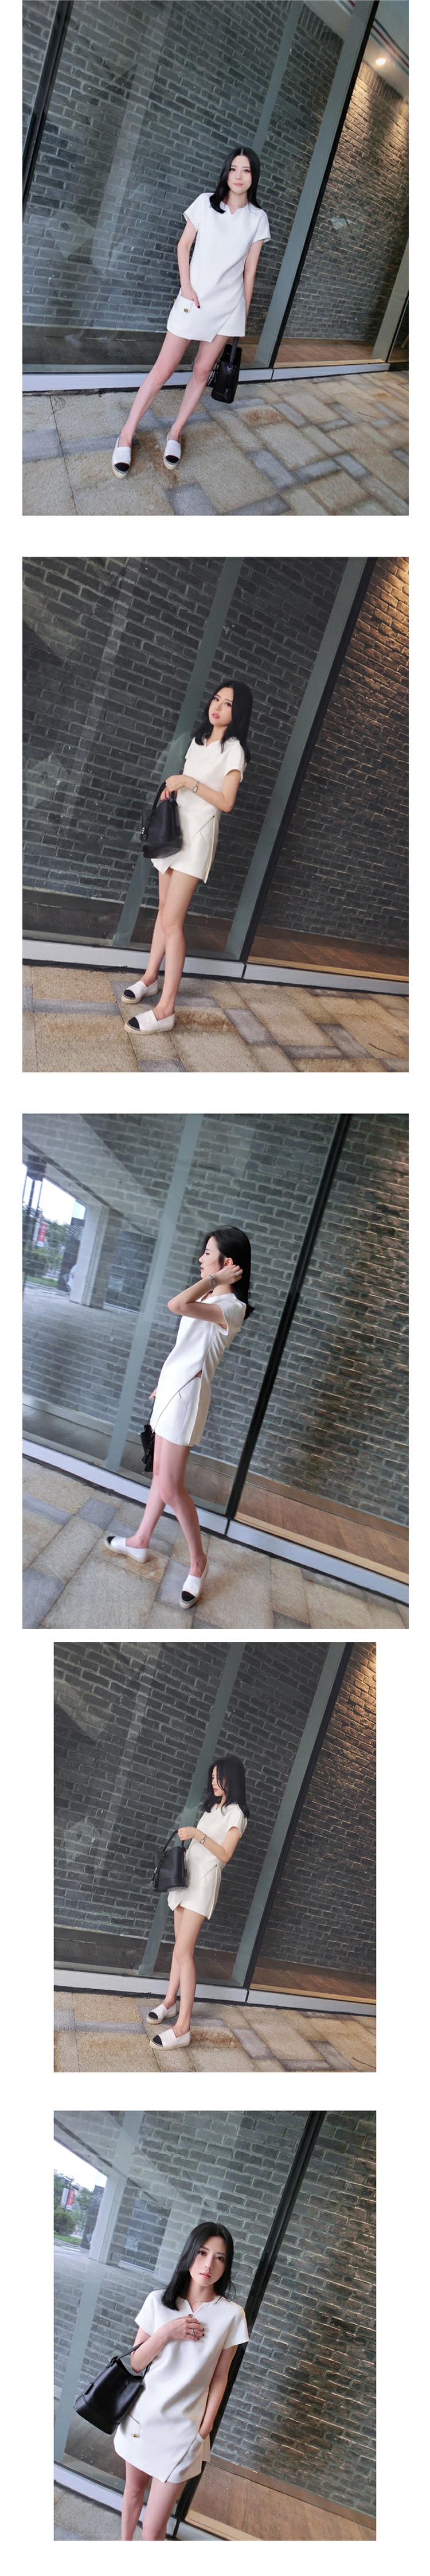 JEANE-SUNP 夏装新款女装潮白色连衣裙夏季名媛不规则性感短裙子